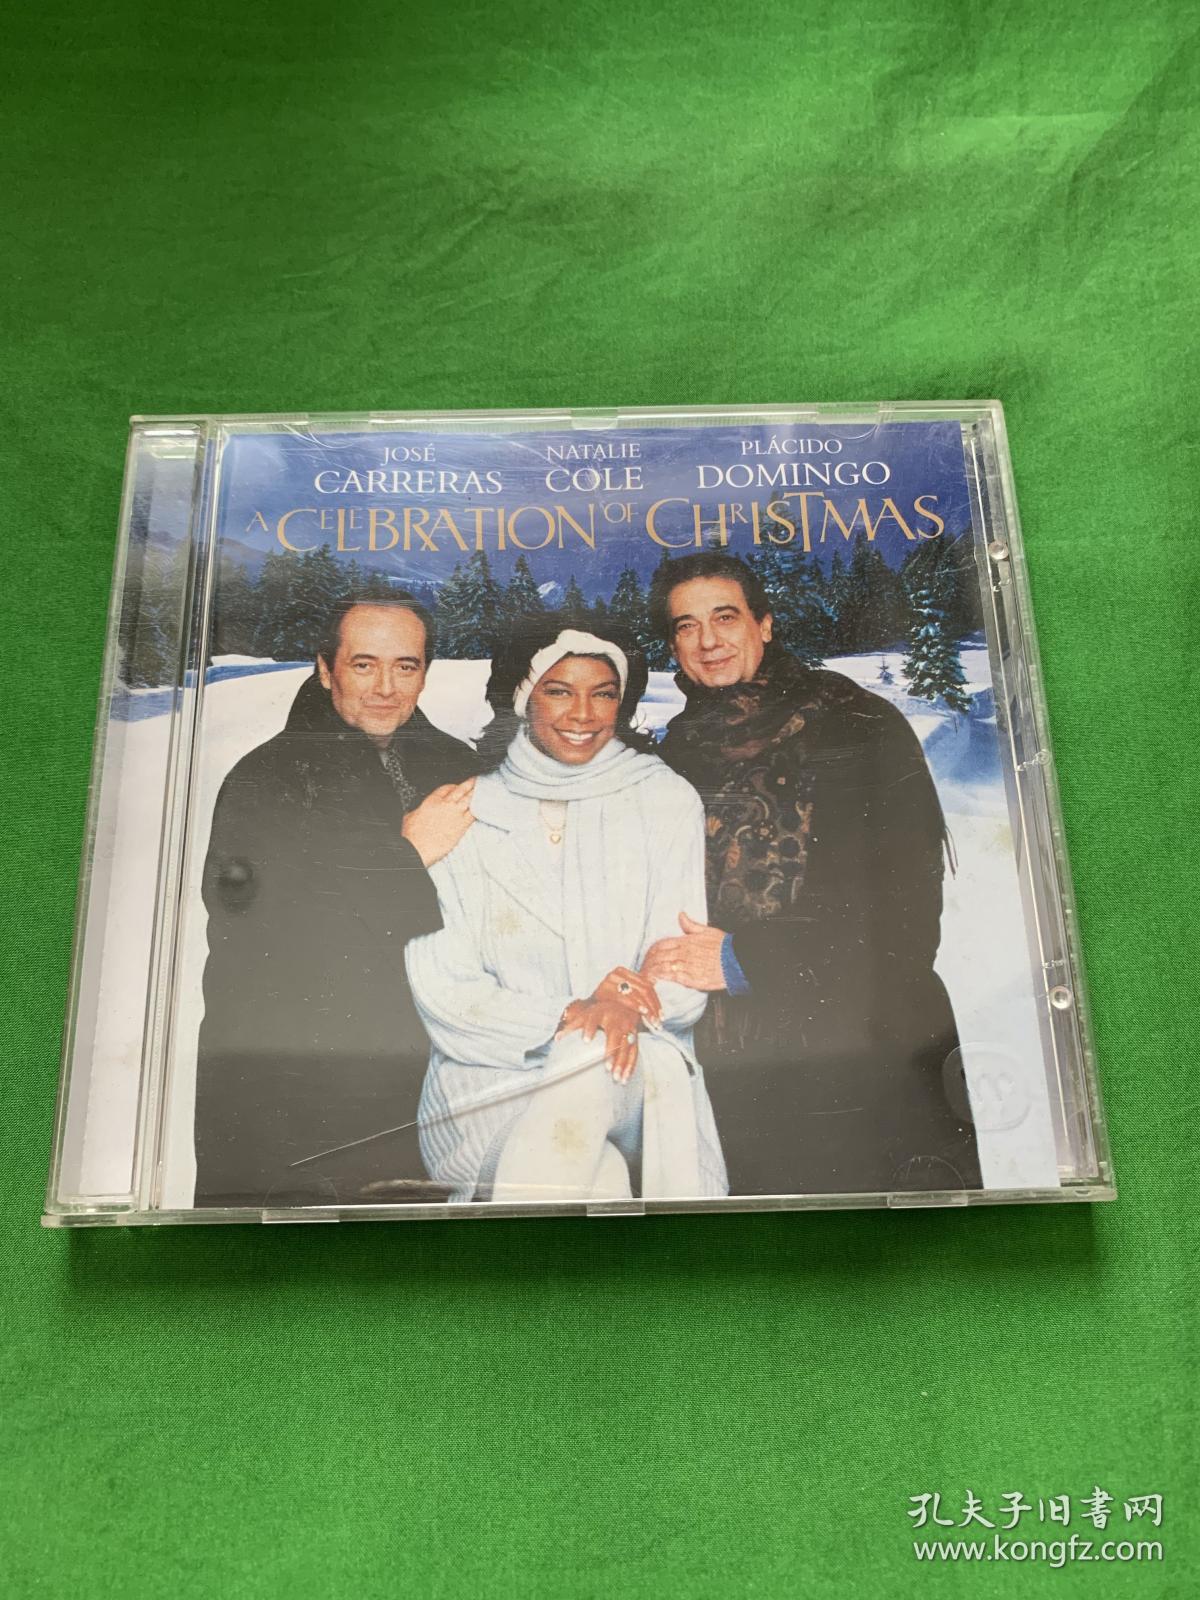 CD /圣诞的祝福（天王天后宫23）ACELEBRATION OF CHRISTMAS /JOSE CARRERAS/NATALIE COLE /PLACIDO DOMINGO/